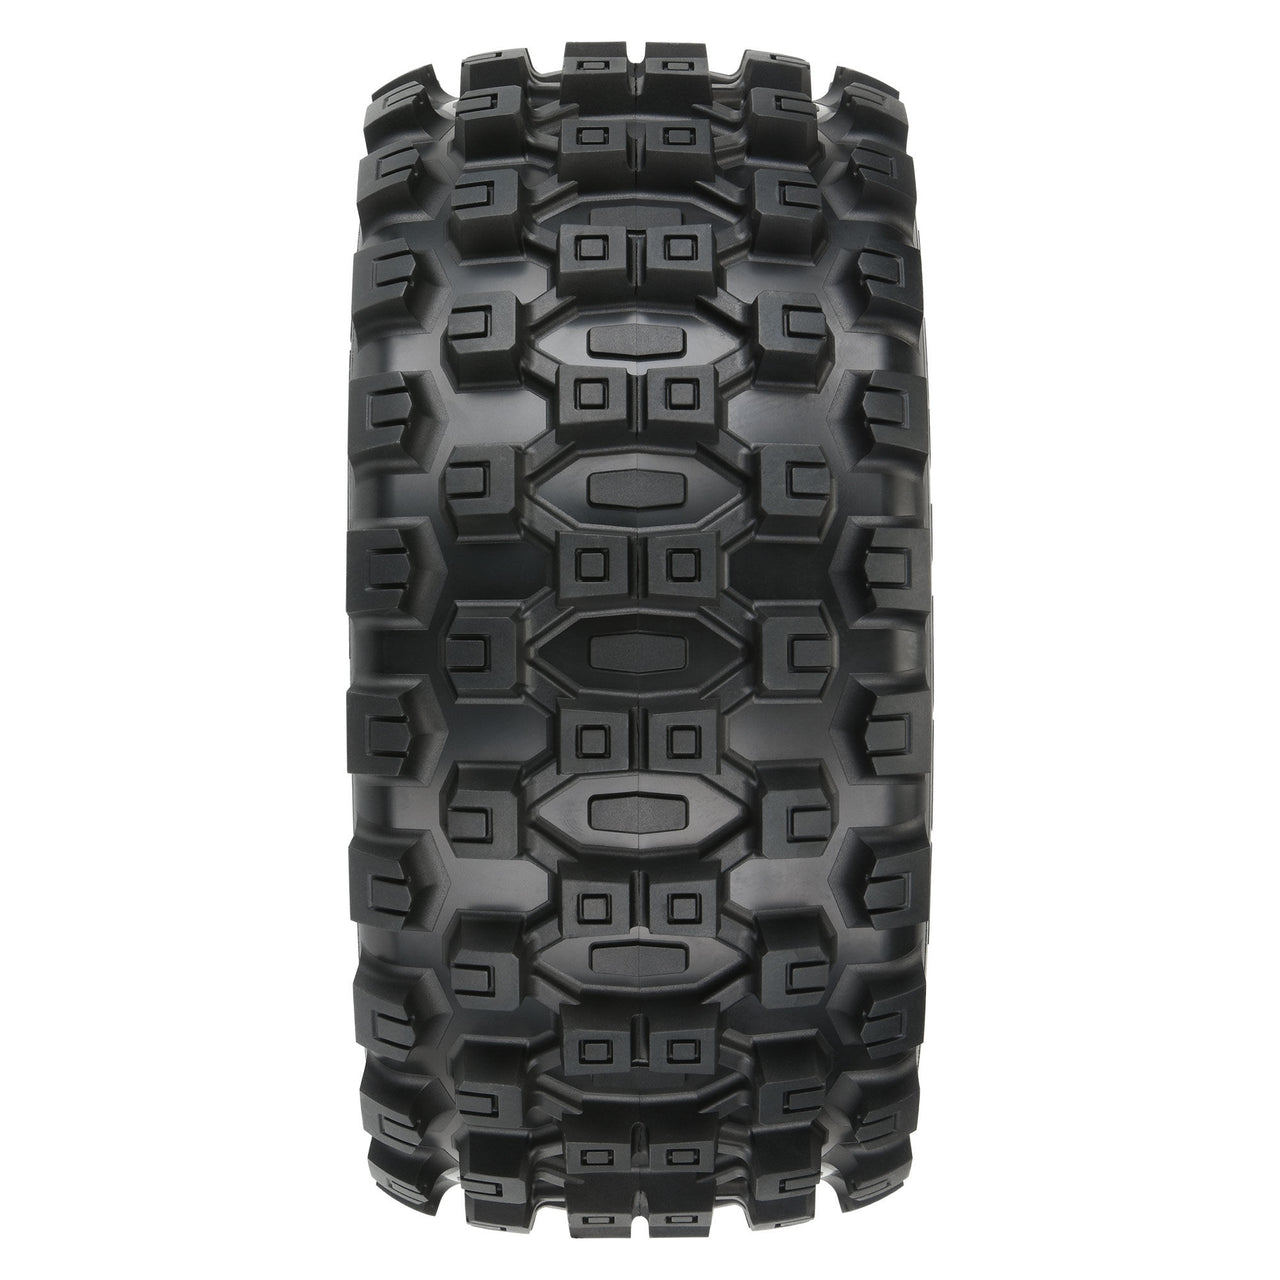 PRO1019811 Neumáticos 1/6 Badlands MX57 delanteros/traseros de 5,7” montados en ruedas hexagonales extraíbles Raid 8x48 de 24 mm (2): negro 